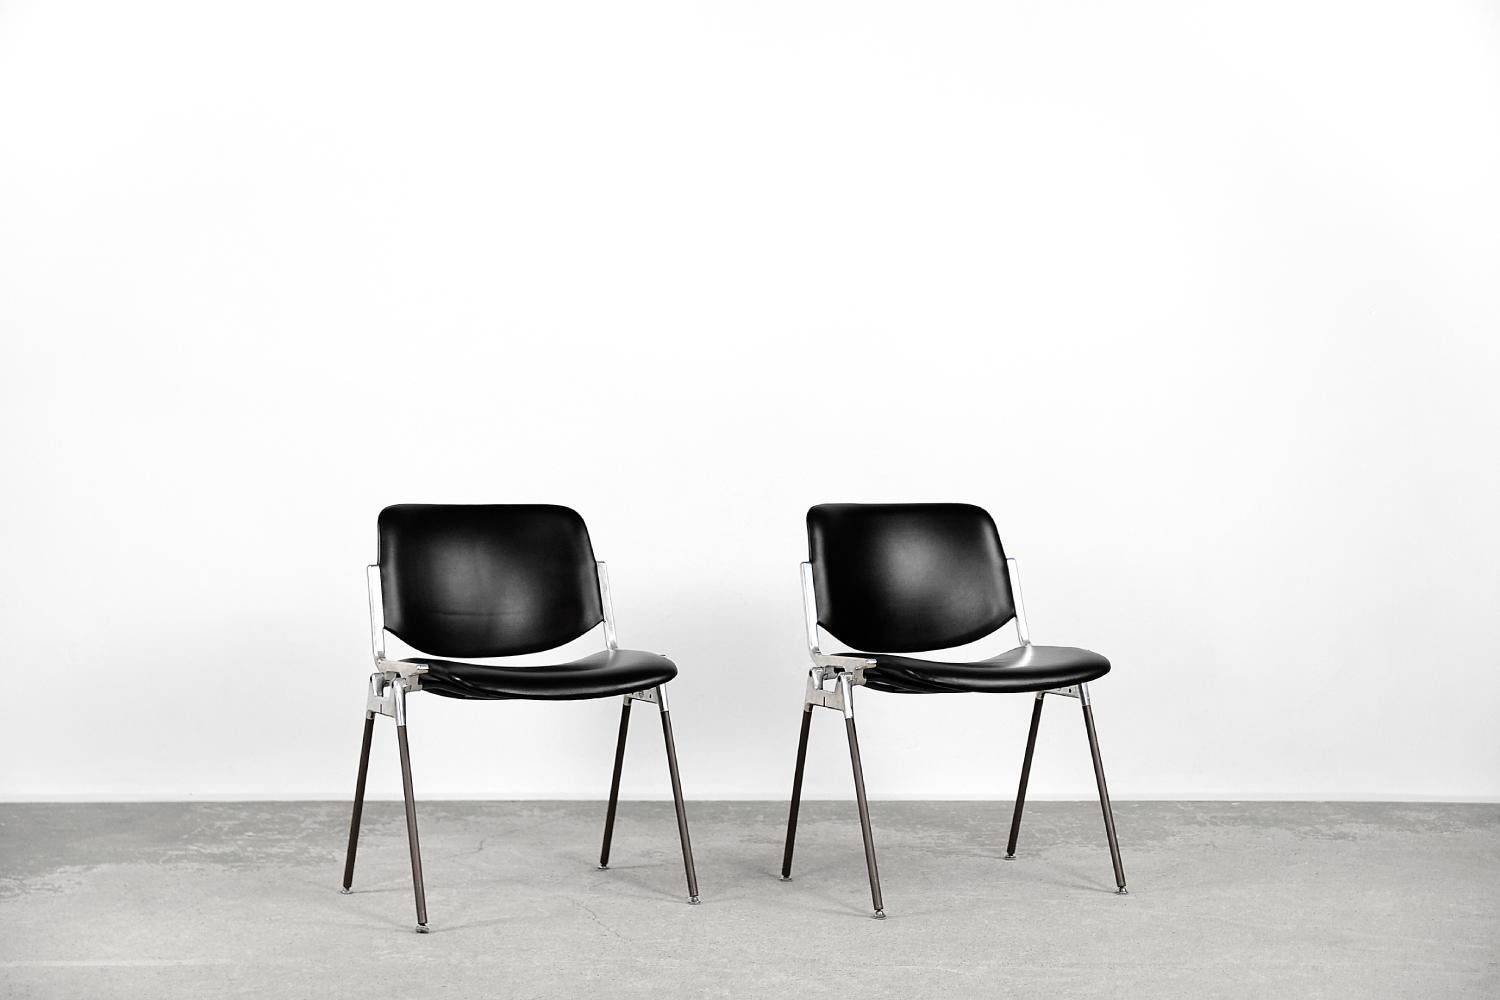 Dieses Set aus zwei DSC 106-Stühlen wurde 1965 von Giancarla Piretti für die italienische Firma Castelli entworfen. Er ist eines der bekanntesten Stuhlmodelle der Marke und ist immer noch ein Objekt mit einem innovativen und attraktiven Design. Die